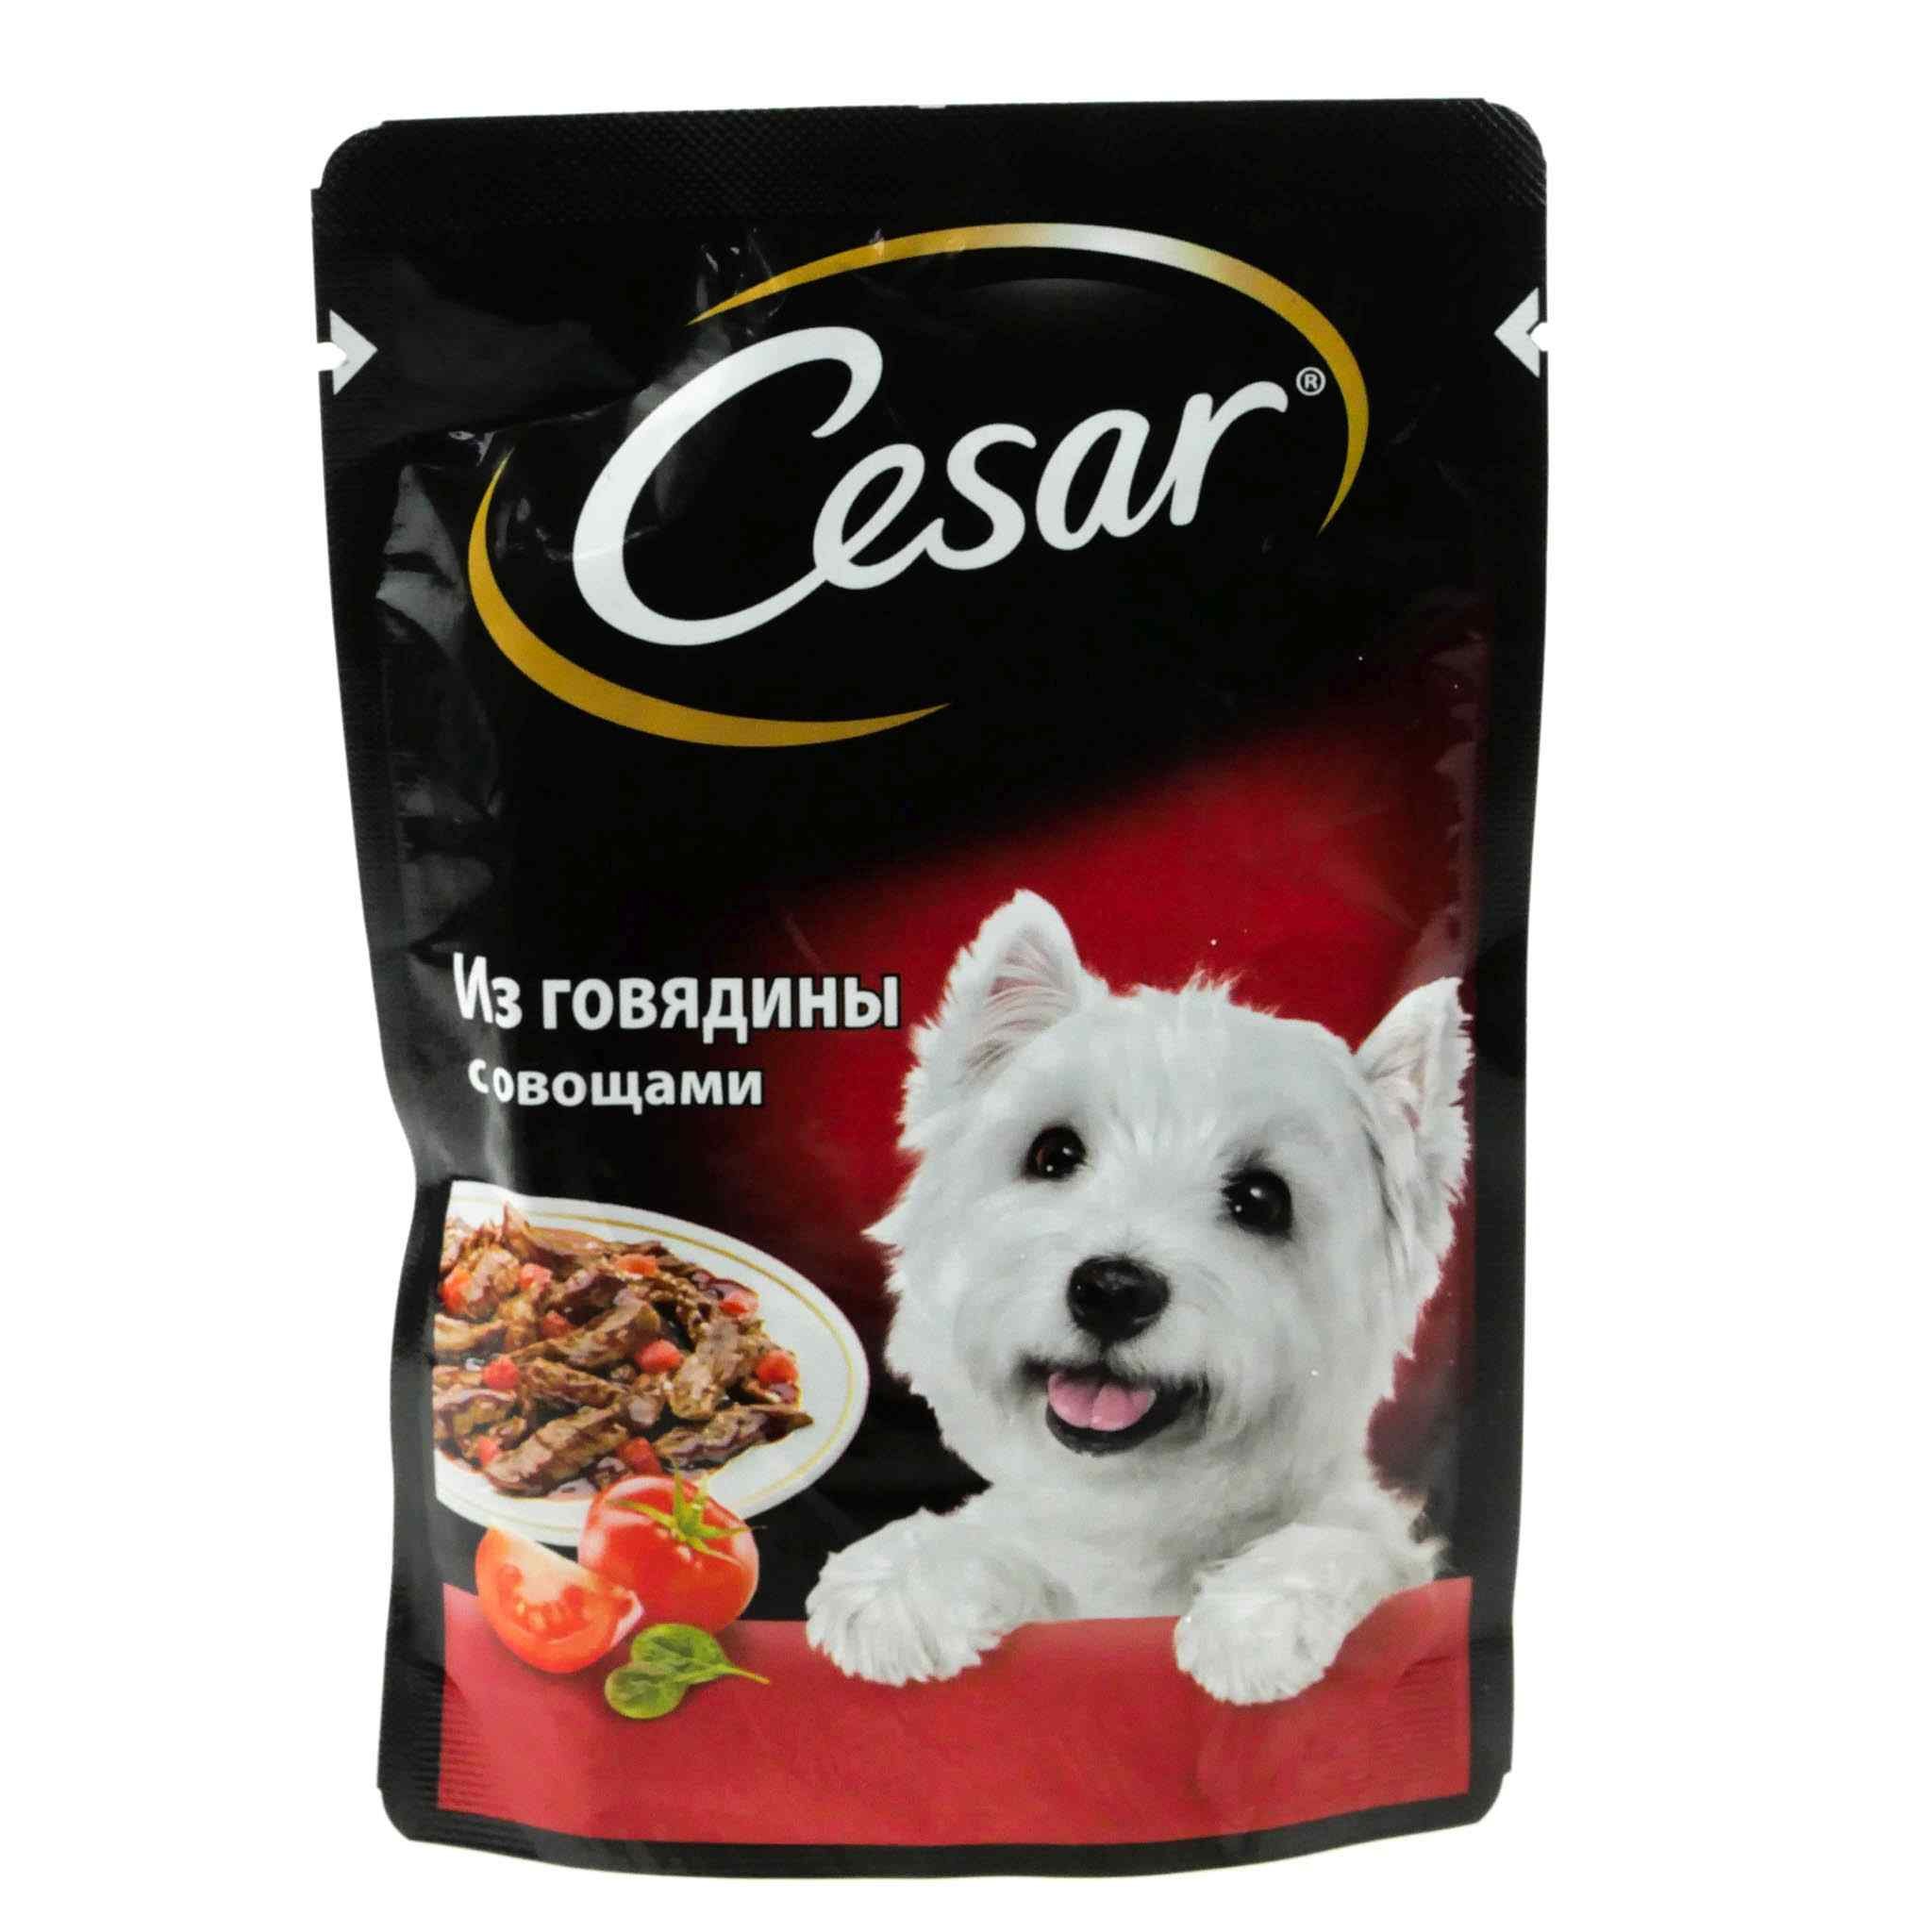 Готовый корм для собак. Корм говядина с овощами Cesar 85г. Cesar корм для собак говядина с овощами 85г. Cesar корм для собак 85 г говядина.